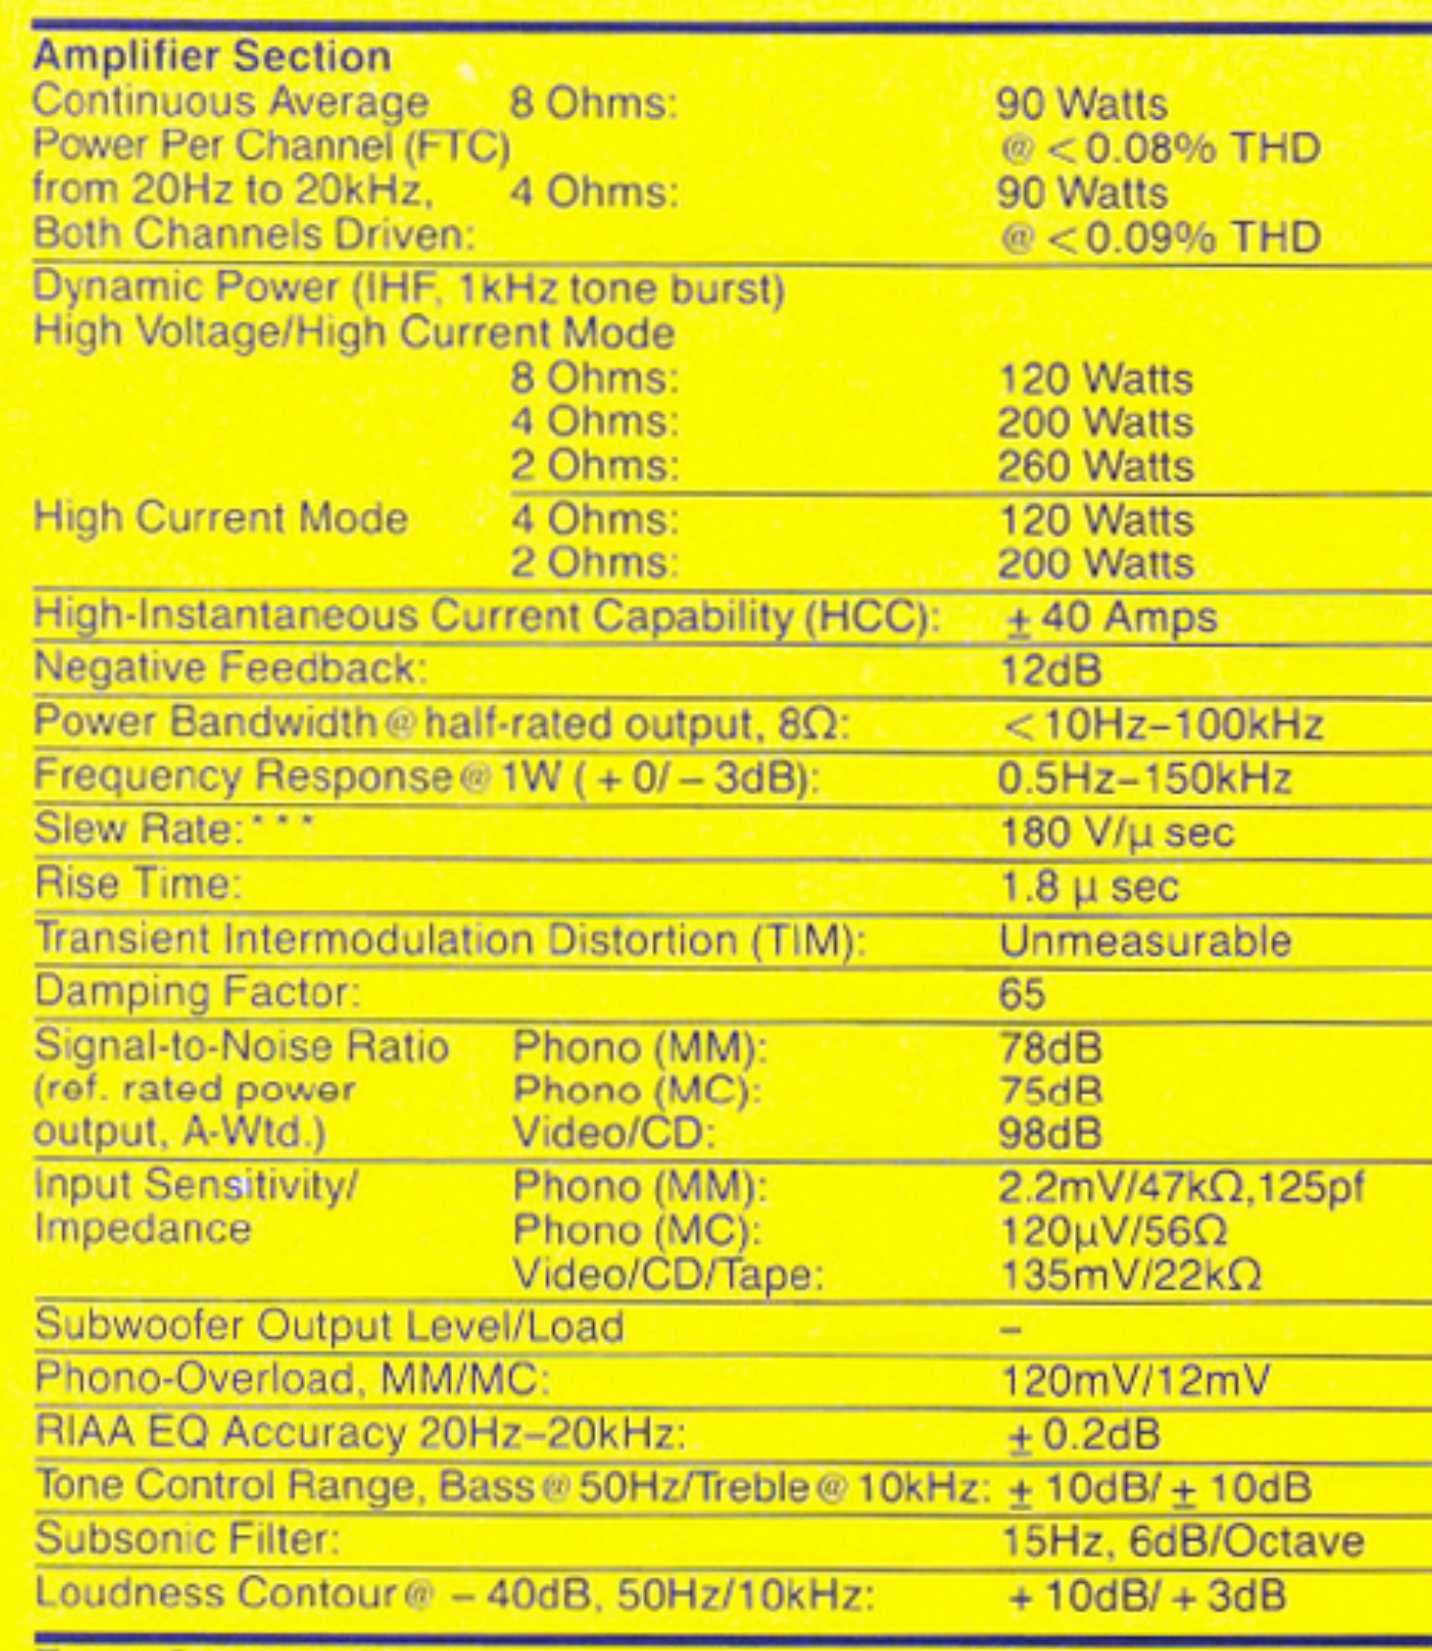 топ усилитель Harman Kardon hk 990 Vxi (1988-1991) 2х120-260W 2-8Ω